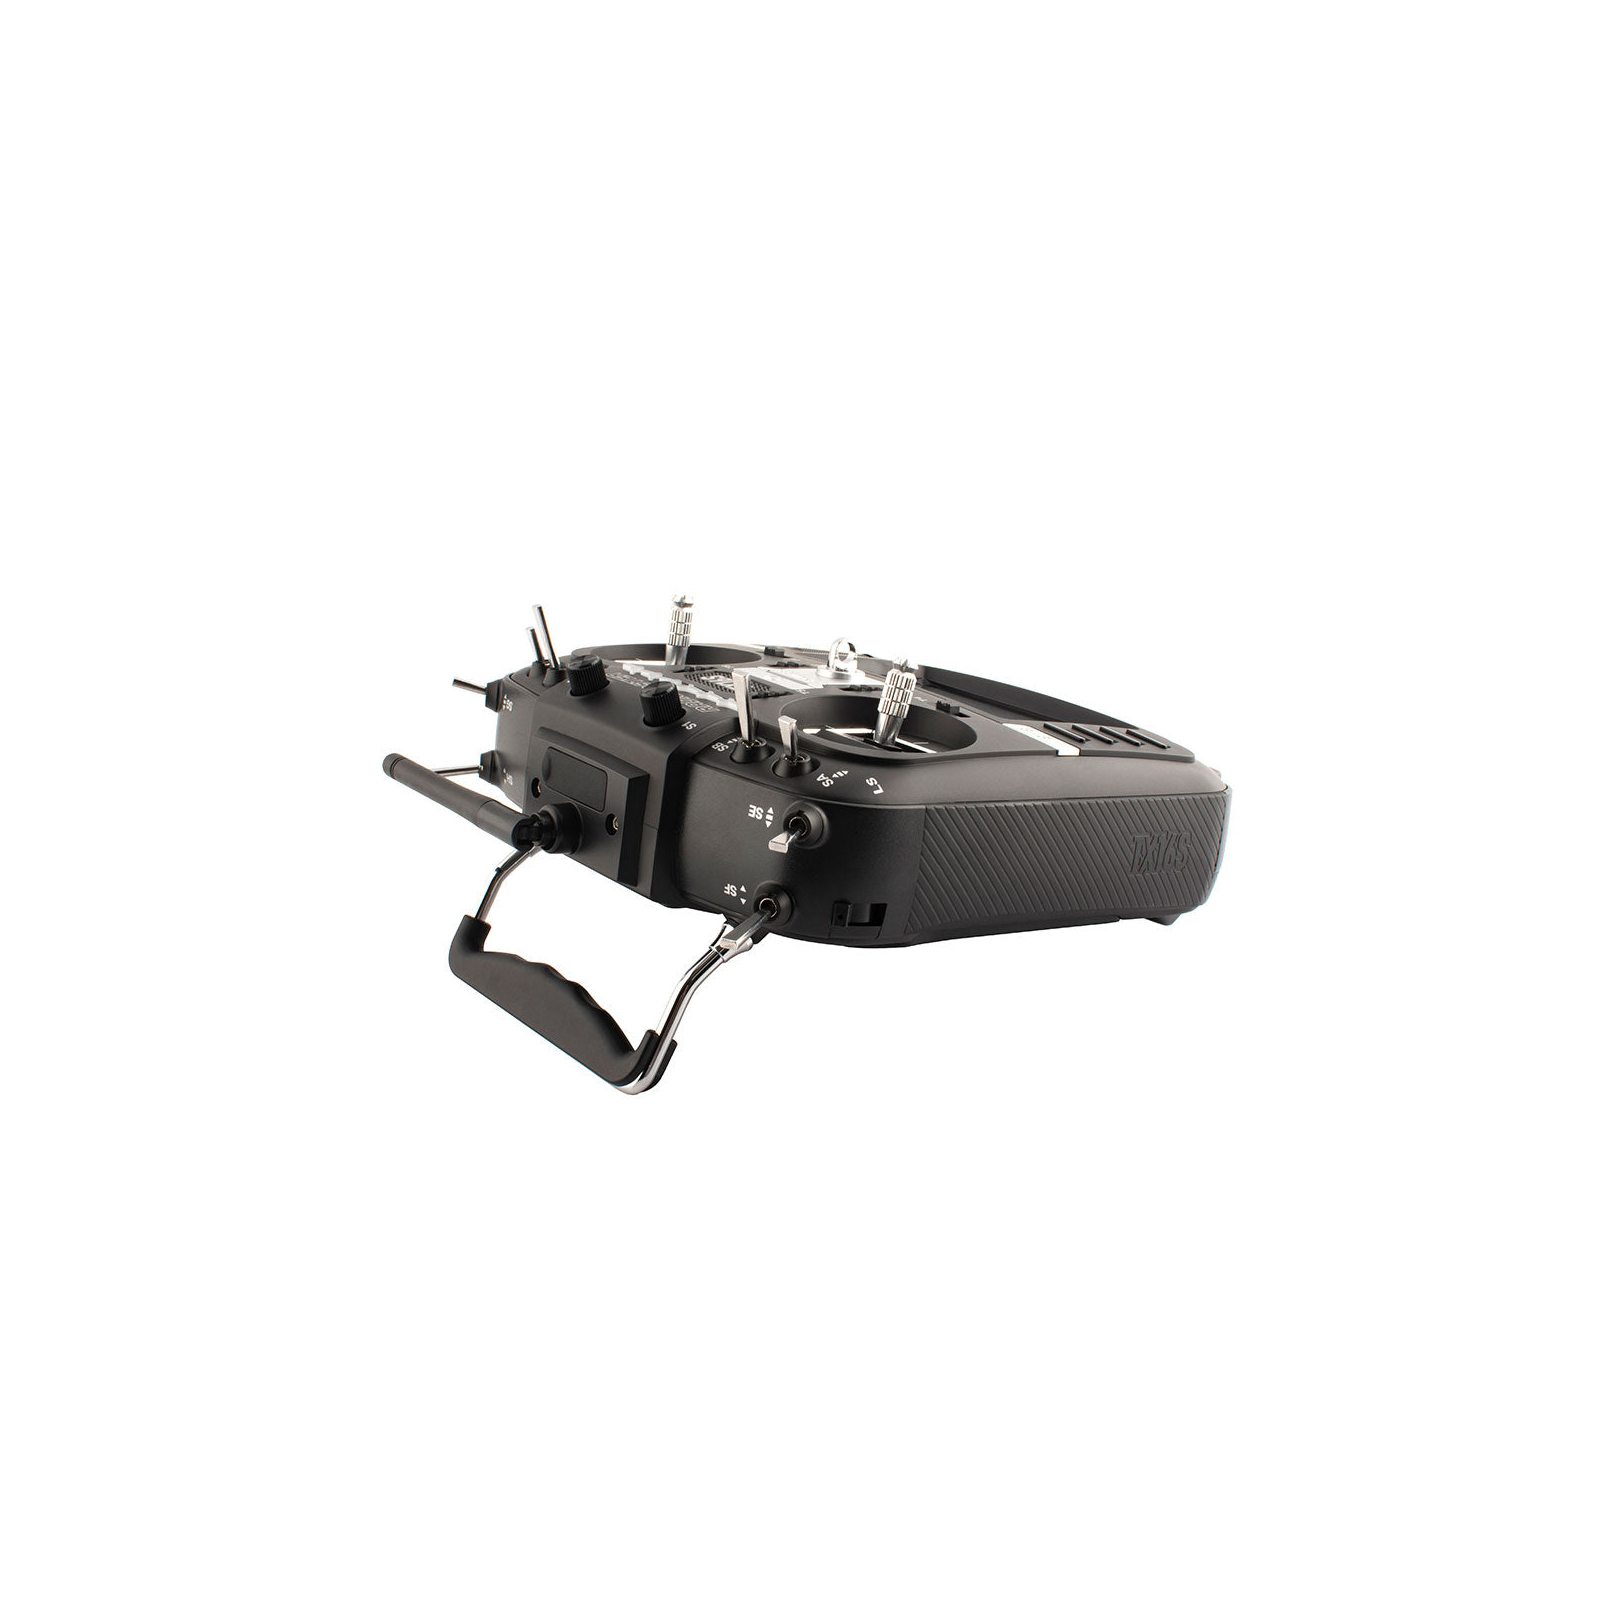 Пульт управления для дрона RadioMaster TX16S MKII HALL V4.0 ELRS (HP0157.0020) изображение 6